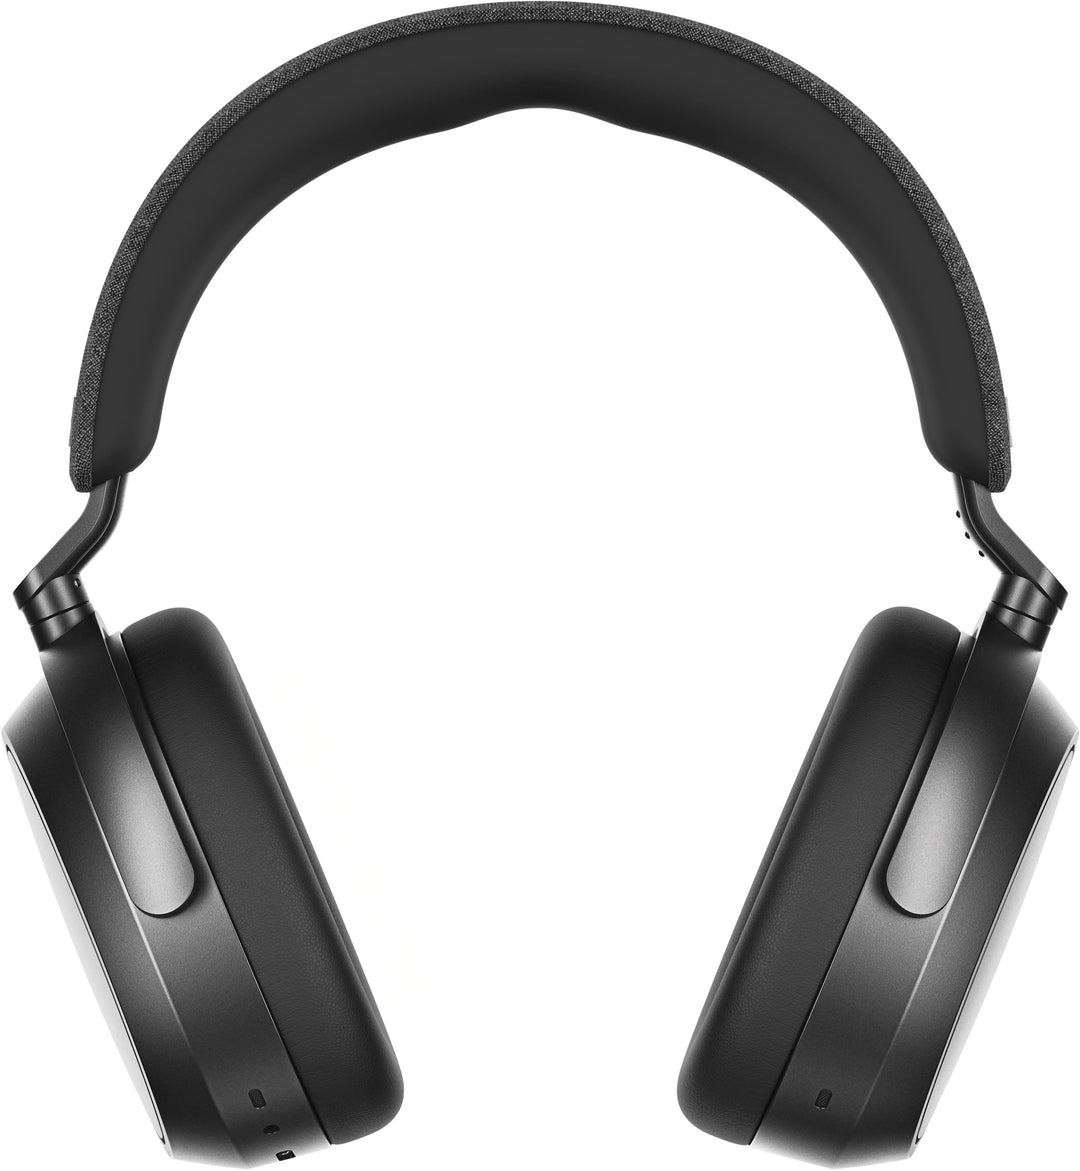 Sennheiser - Momentum 4 Wireless Adaptive Noise-Canceling Over-The-Ear Headphones - Graphite_2